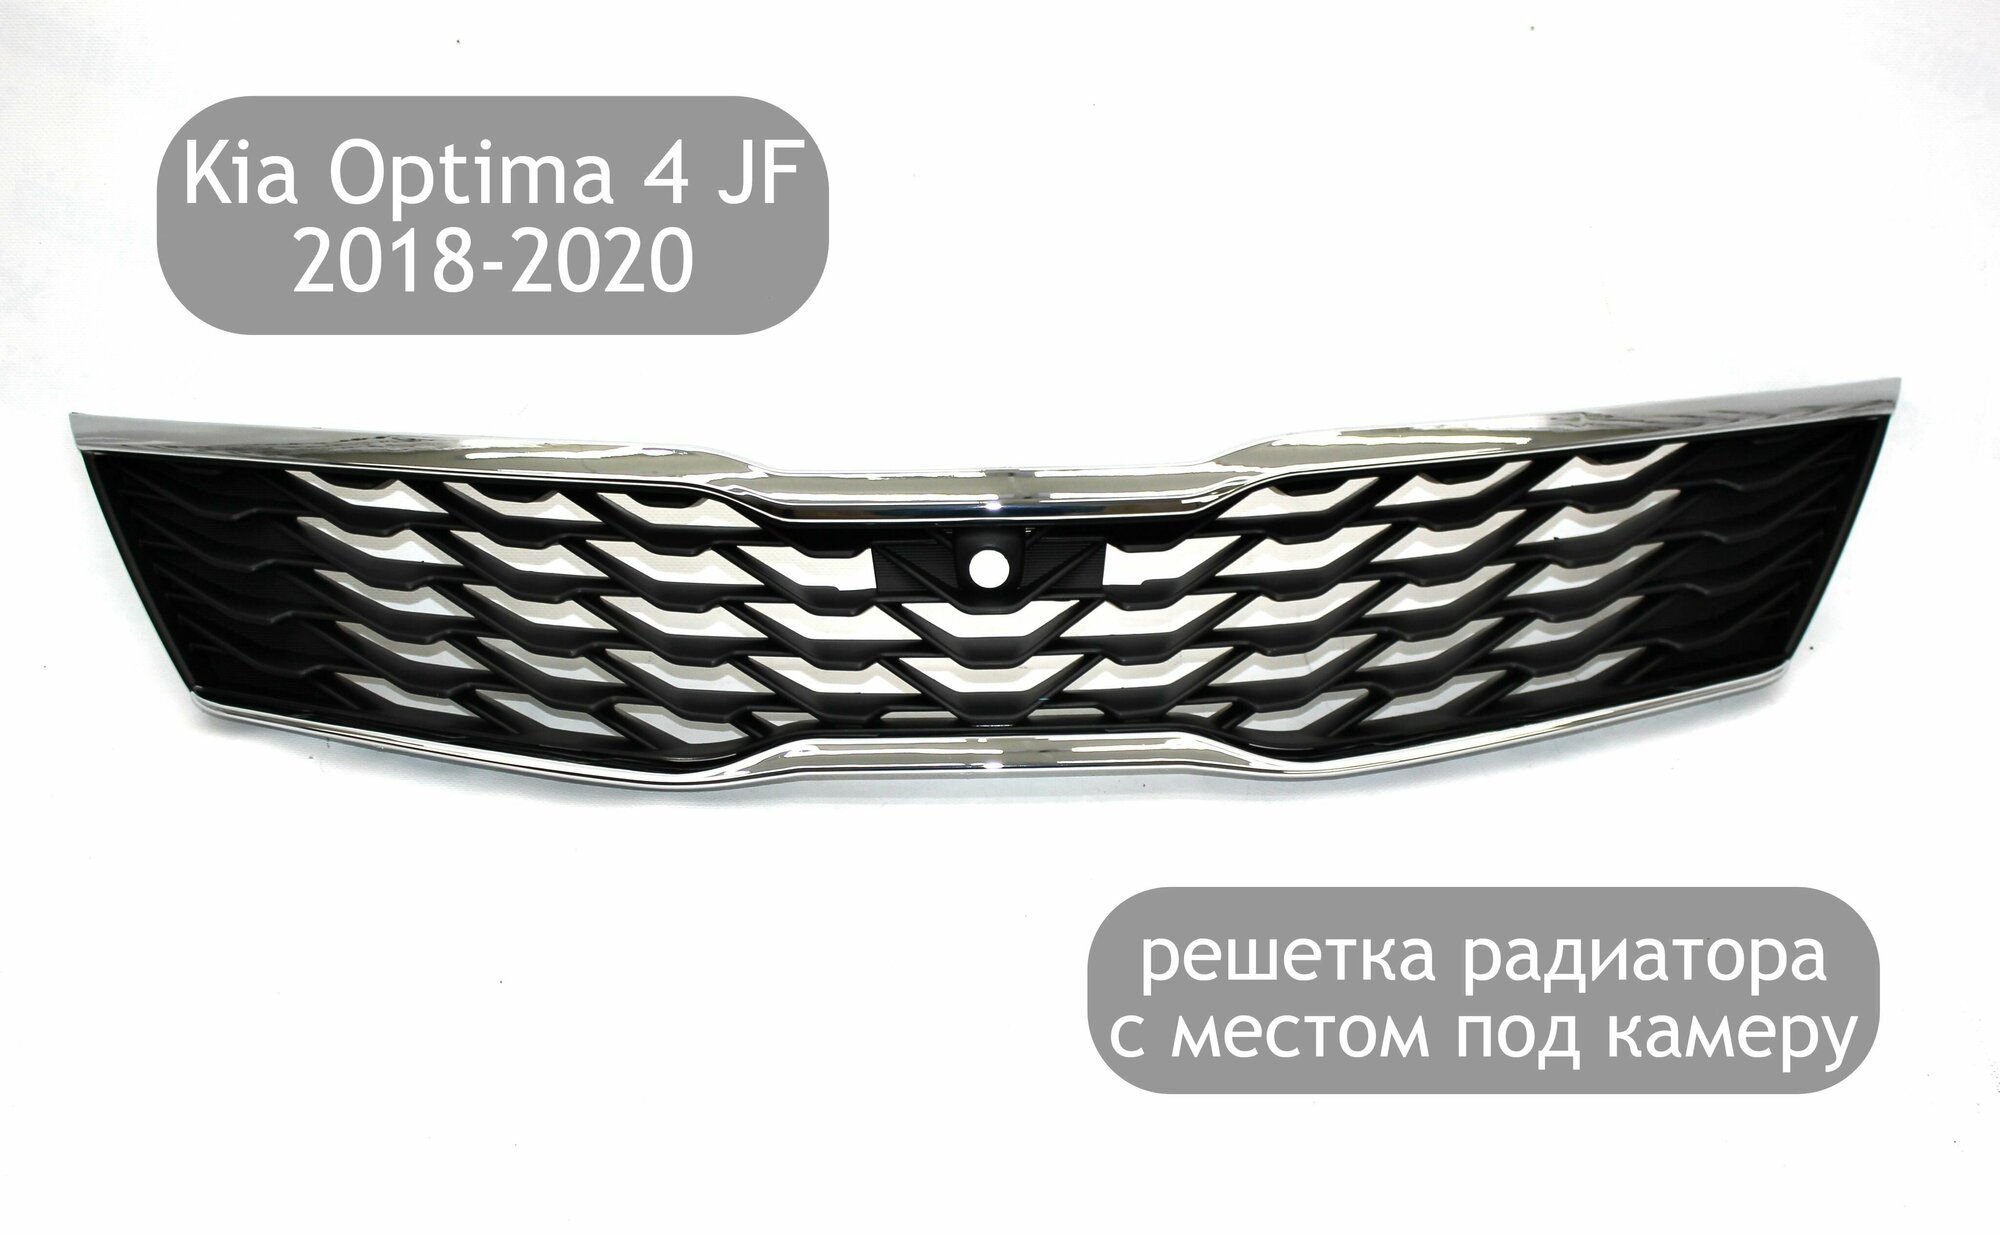 Решётка радиатора GT с местом под камеру для автомобилей Kia Optima 4 JF 2018-2020 (рестайлинг)